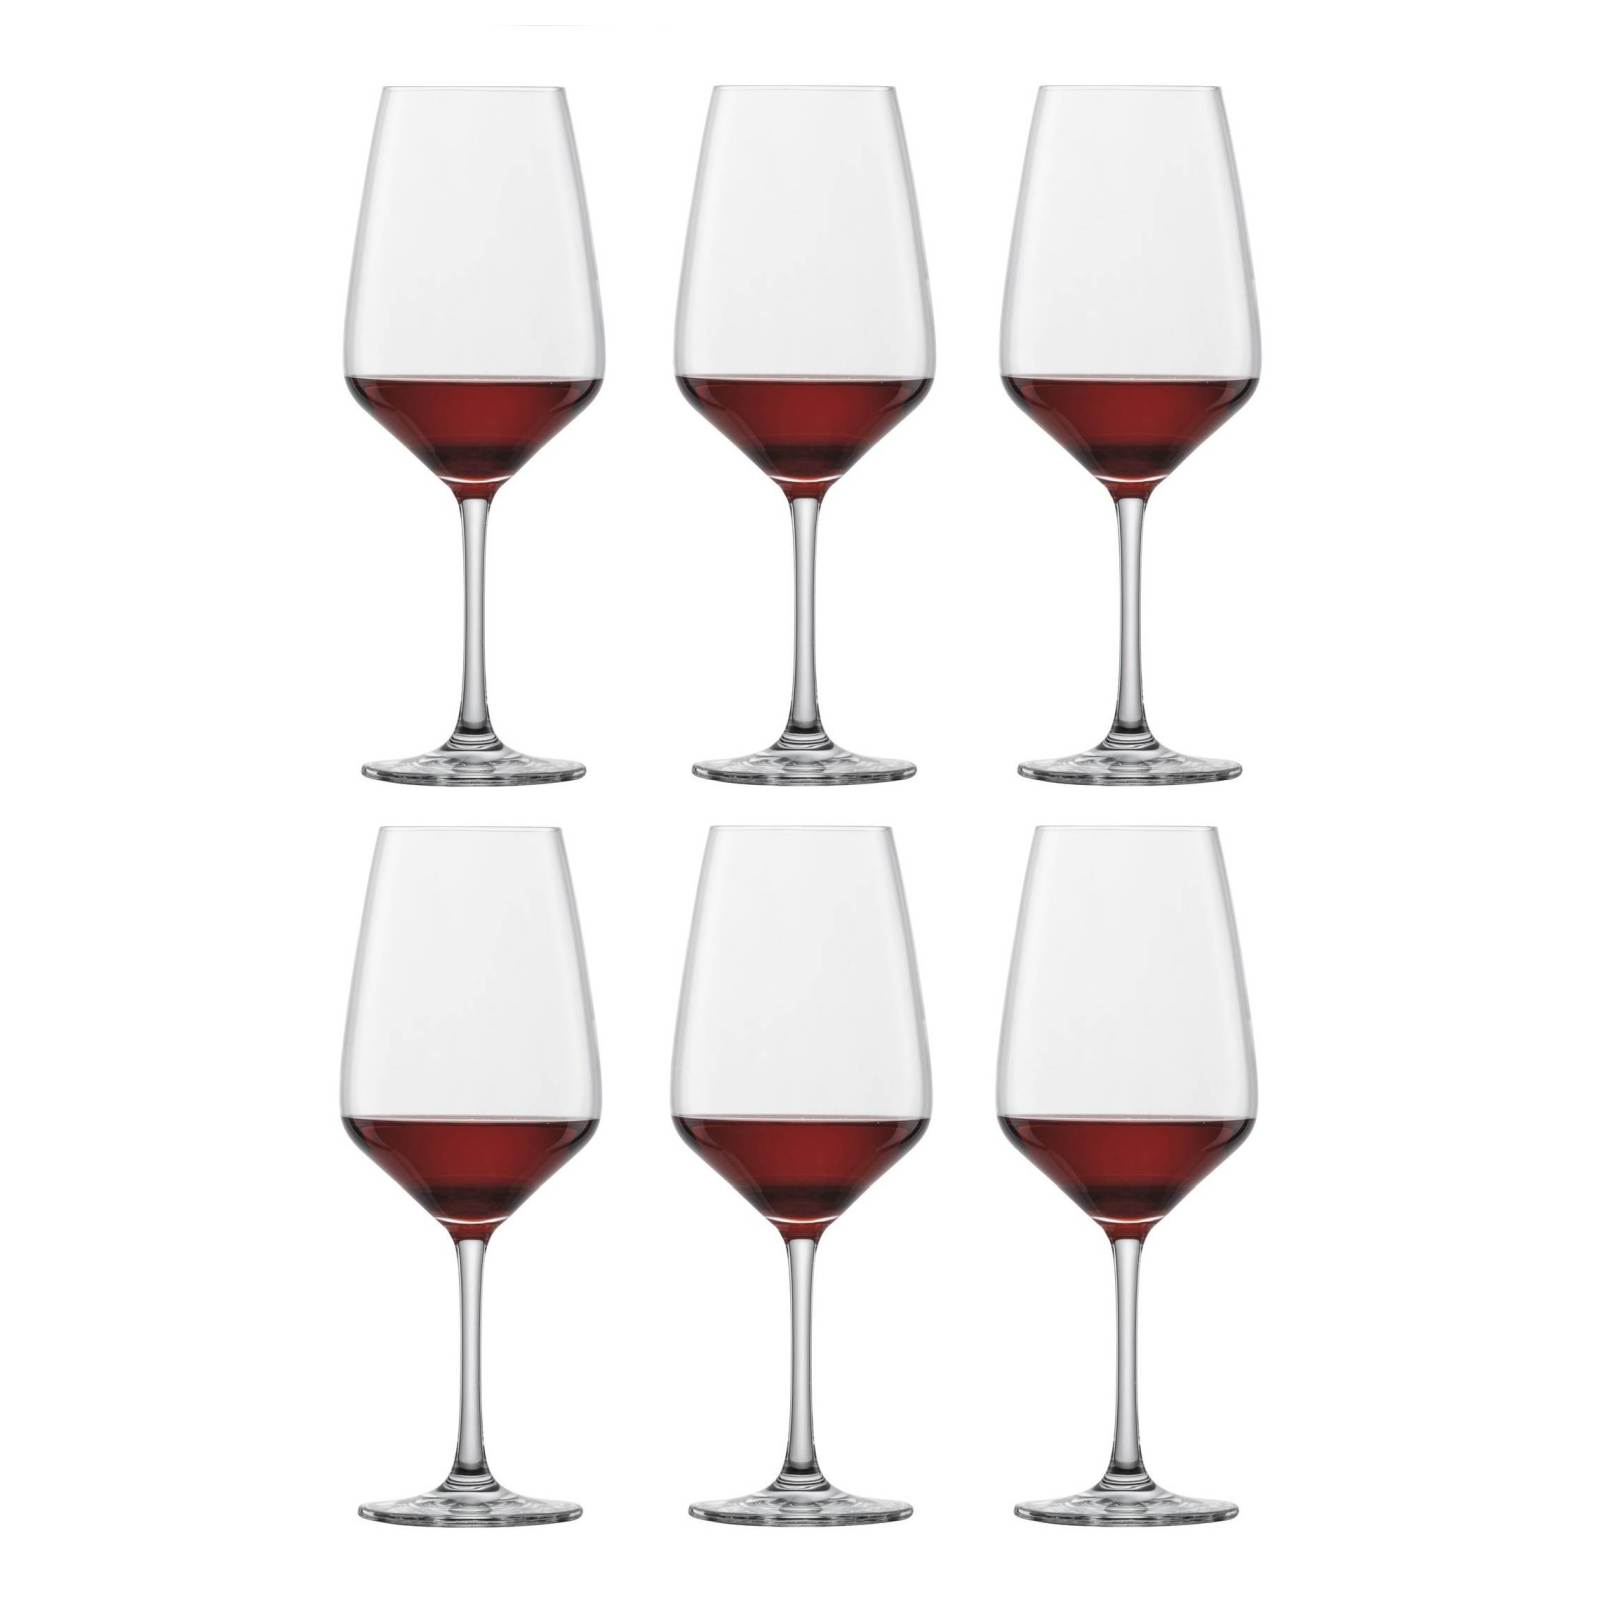 Red wine glass 'Taste' by Schott Zwiesel - 497ml (1 pc.)